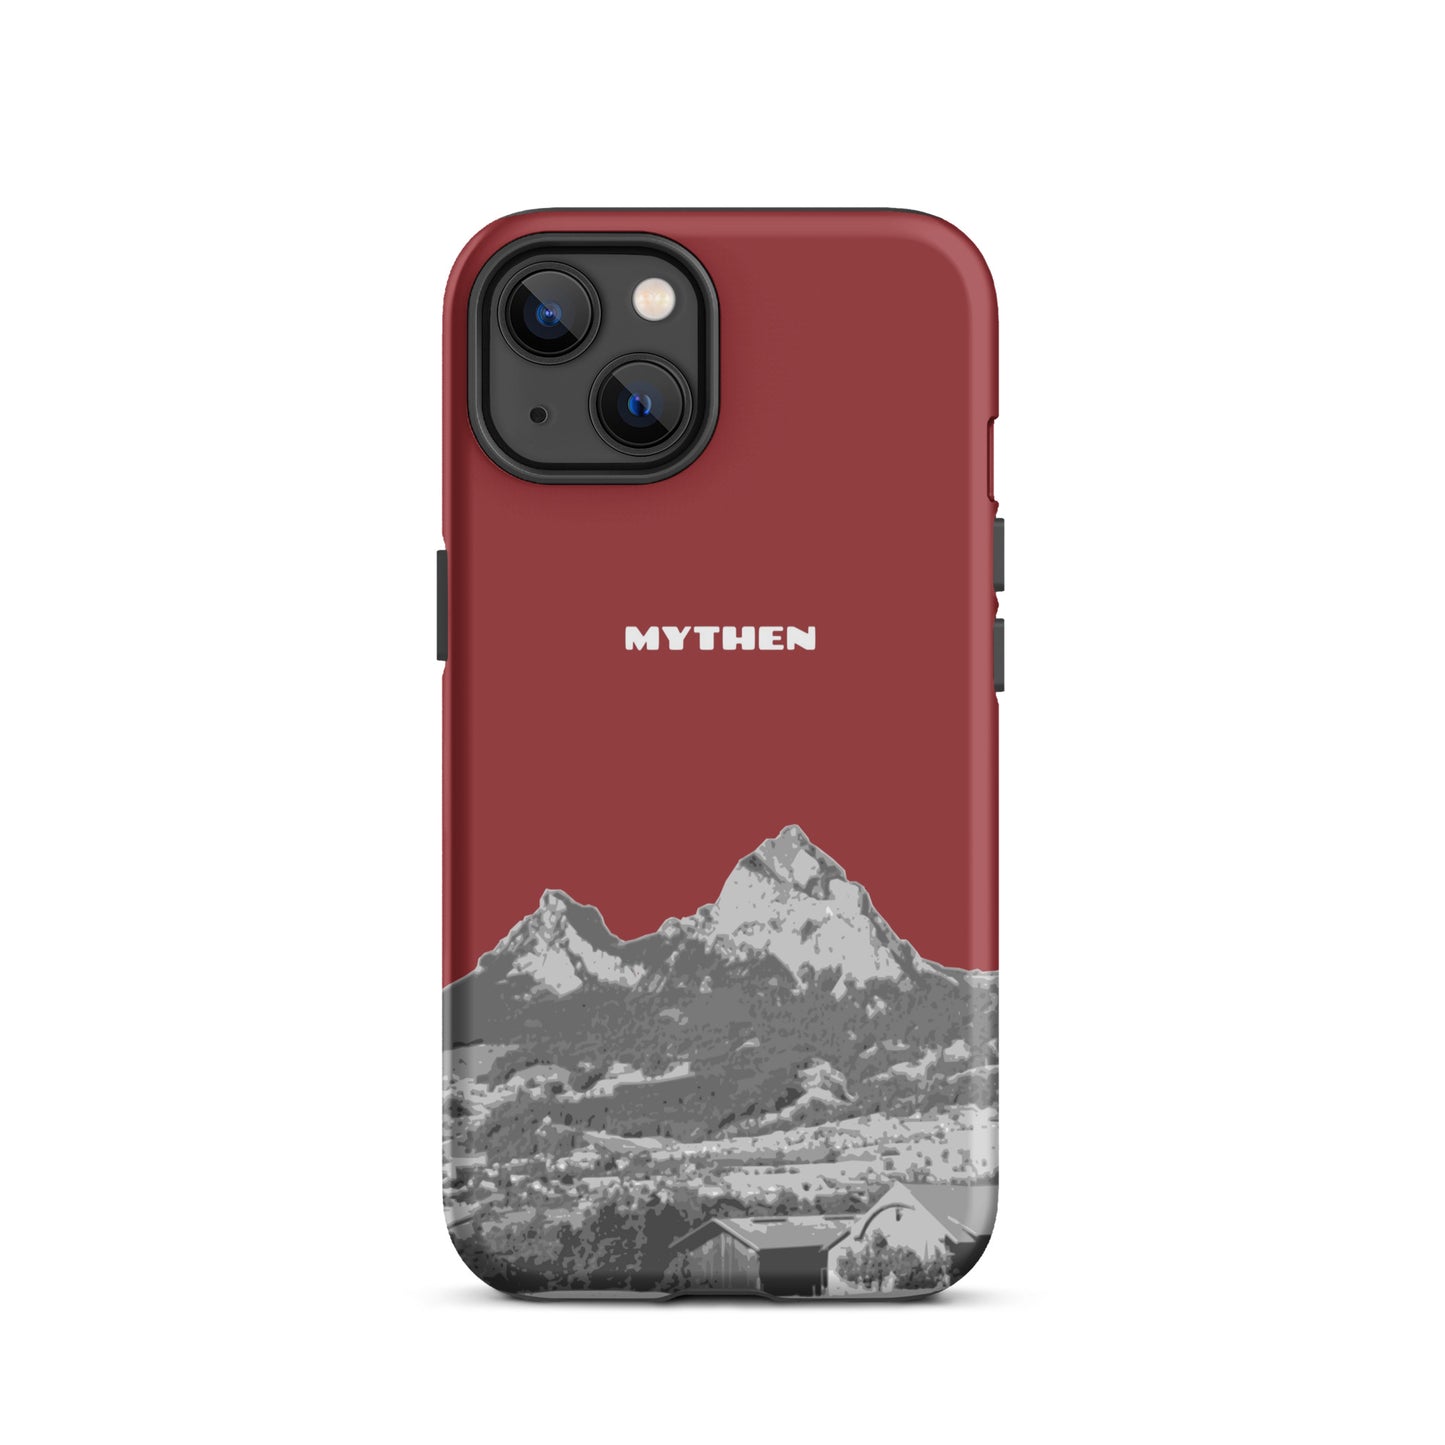 Hülle für das iPhone 13 von Apple in der Farbe Rot, die den Grossen Mythen und den Kleinen Mythen bei Schwyz zeigt. 